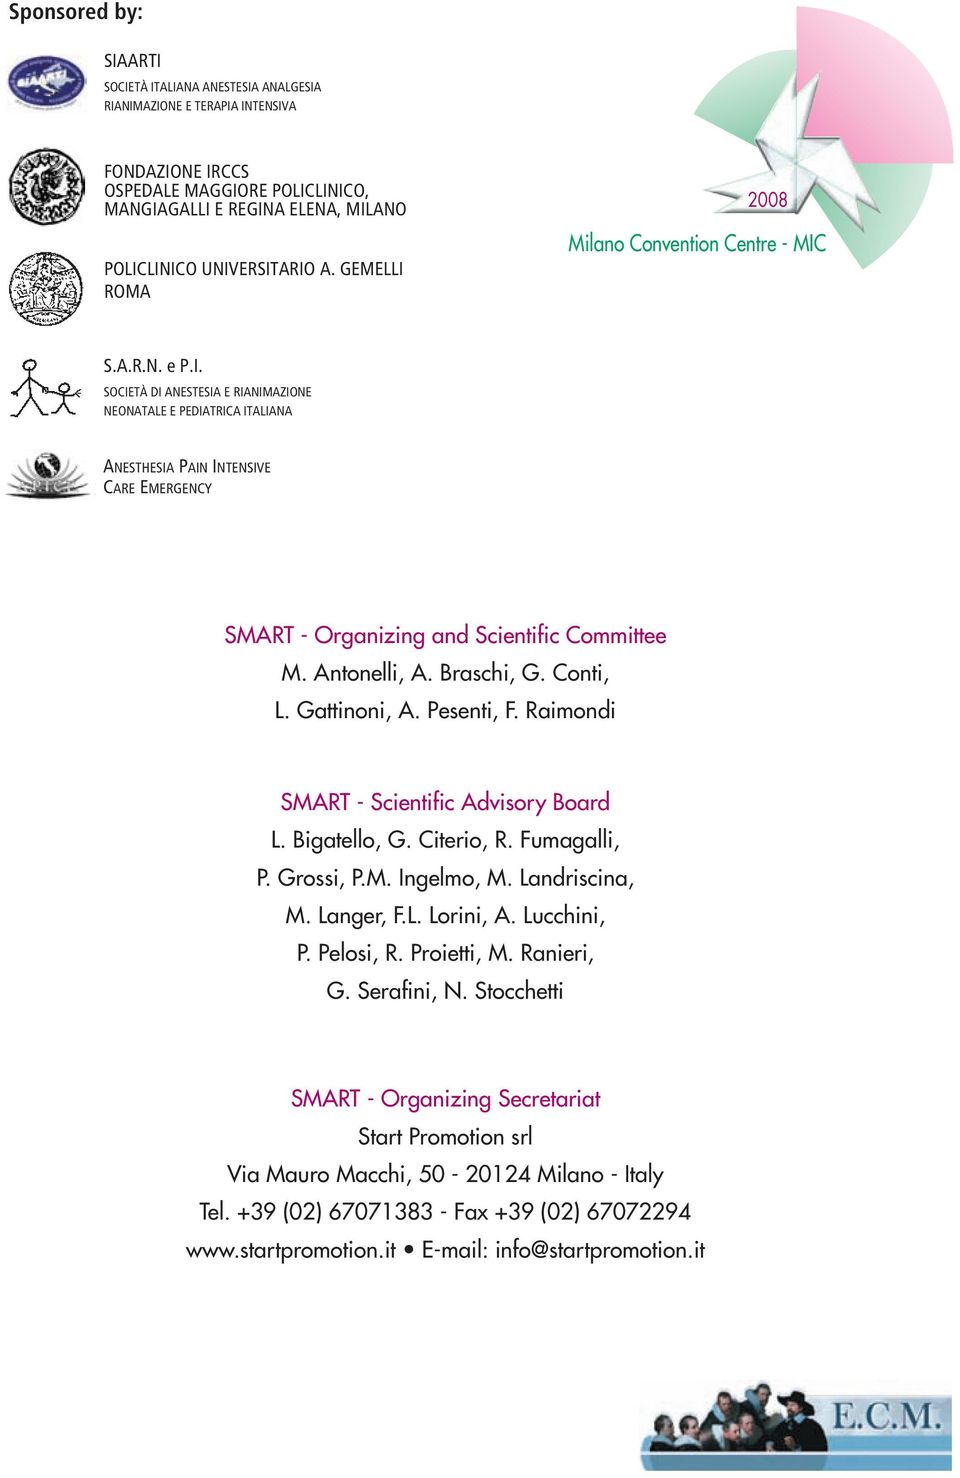 Antonelli, A. Braschi, G. Conti, L. Gattinoni, A. Pesenti, F. Raimondi SMART - Scientific Advisory Board L. Bigatello, G. Citerio, R. Fumagalli, P. Grossi, P.M. Ingelmo, M. Landriscina, M. Langer, F.